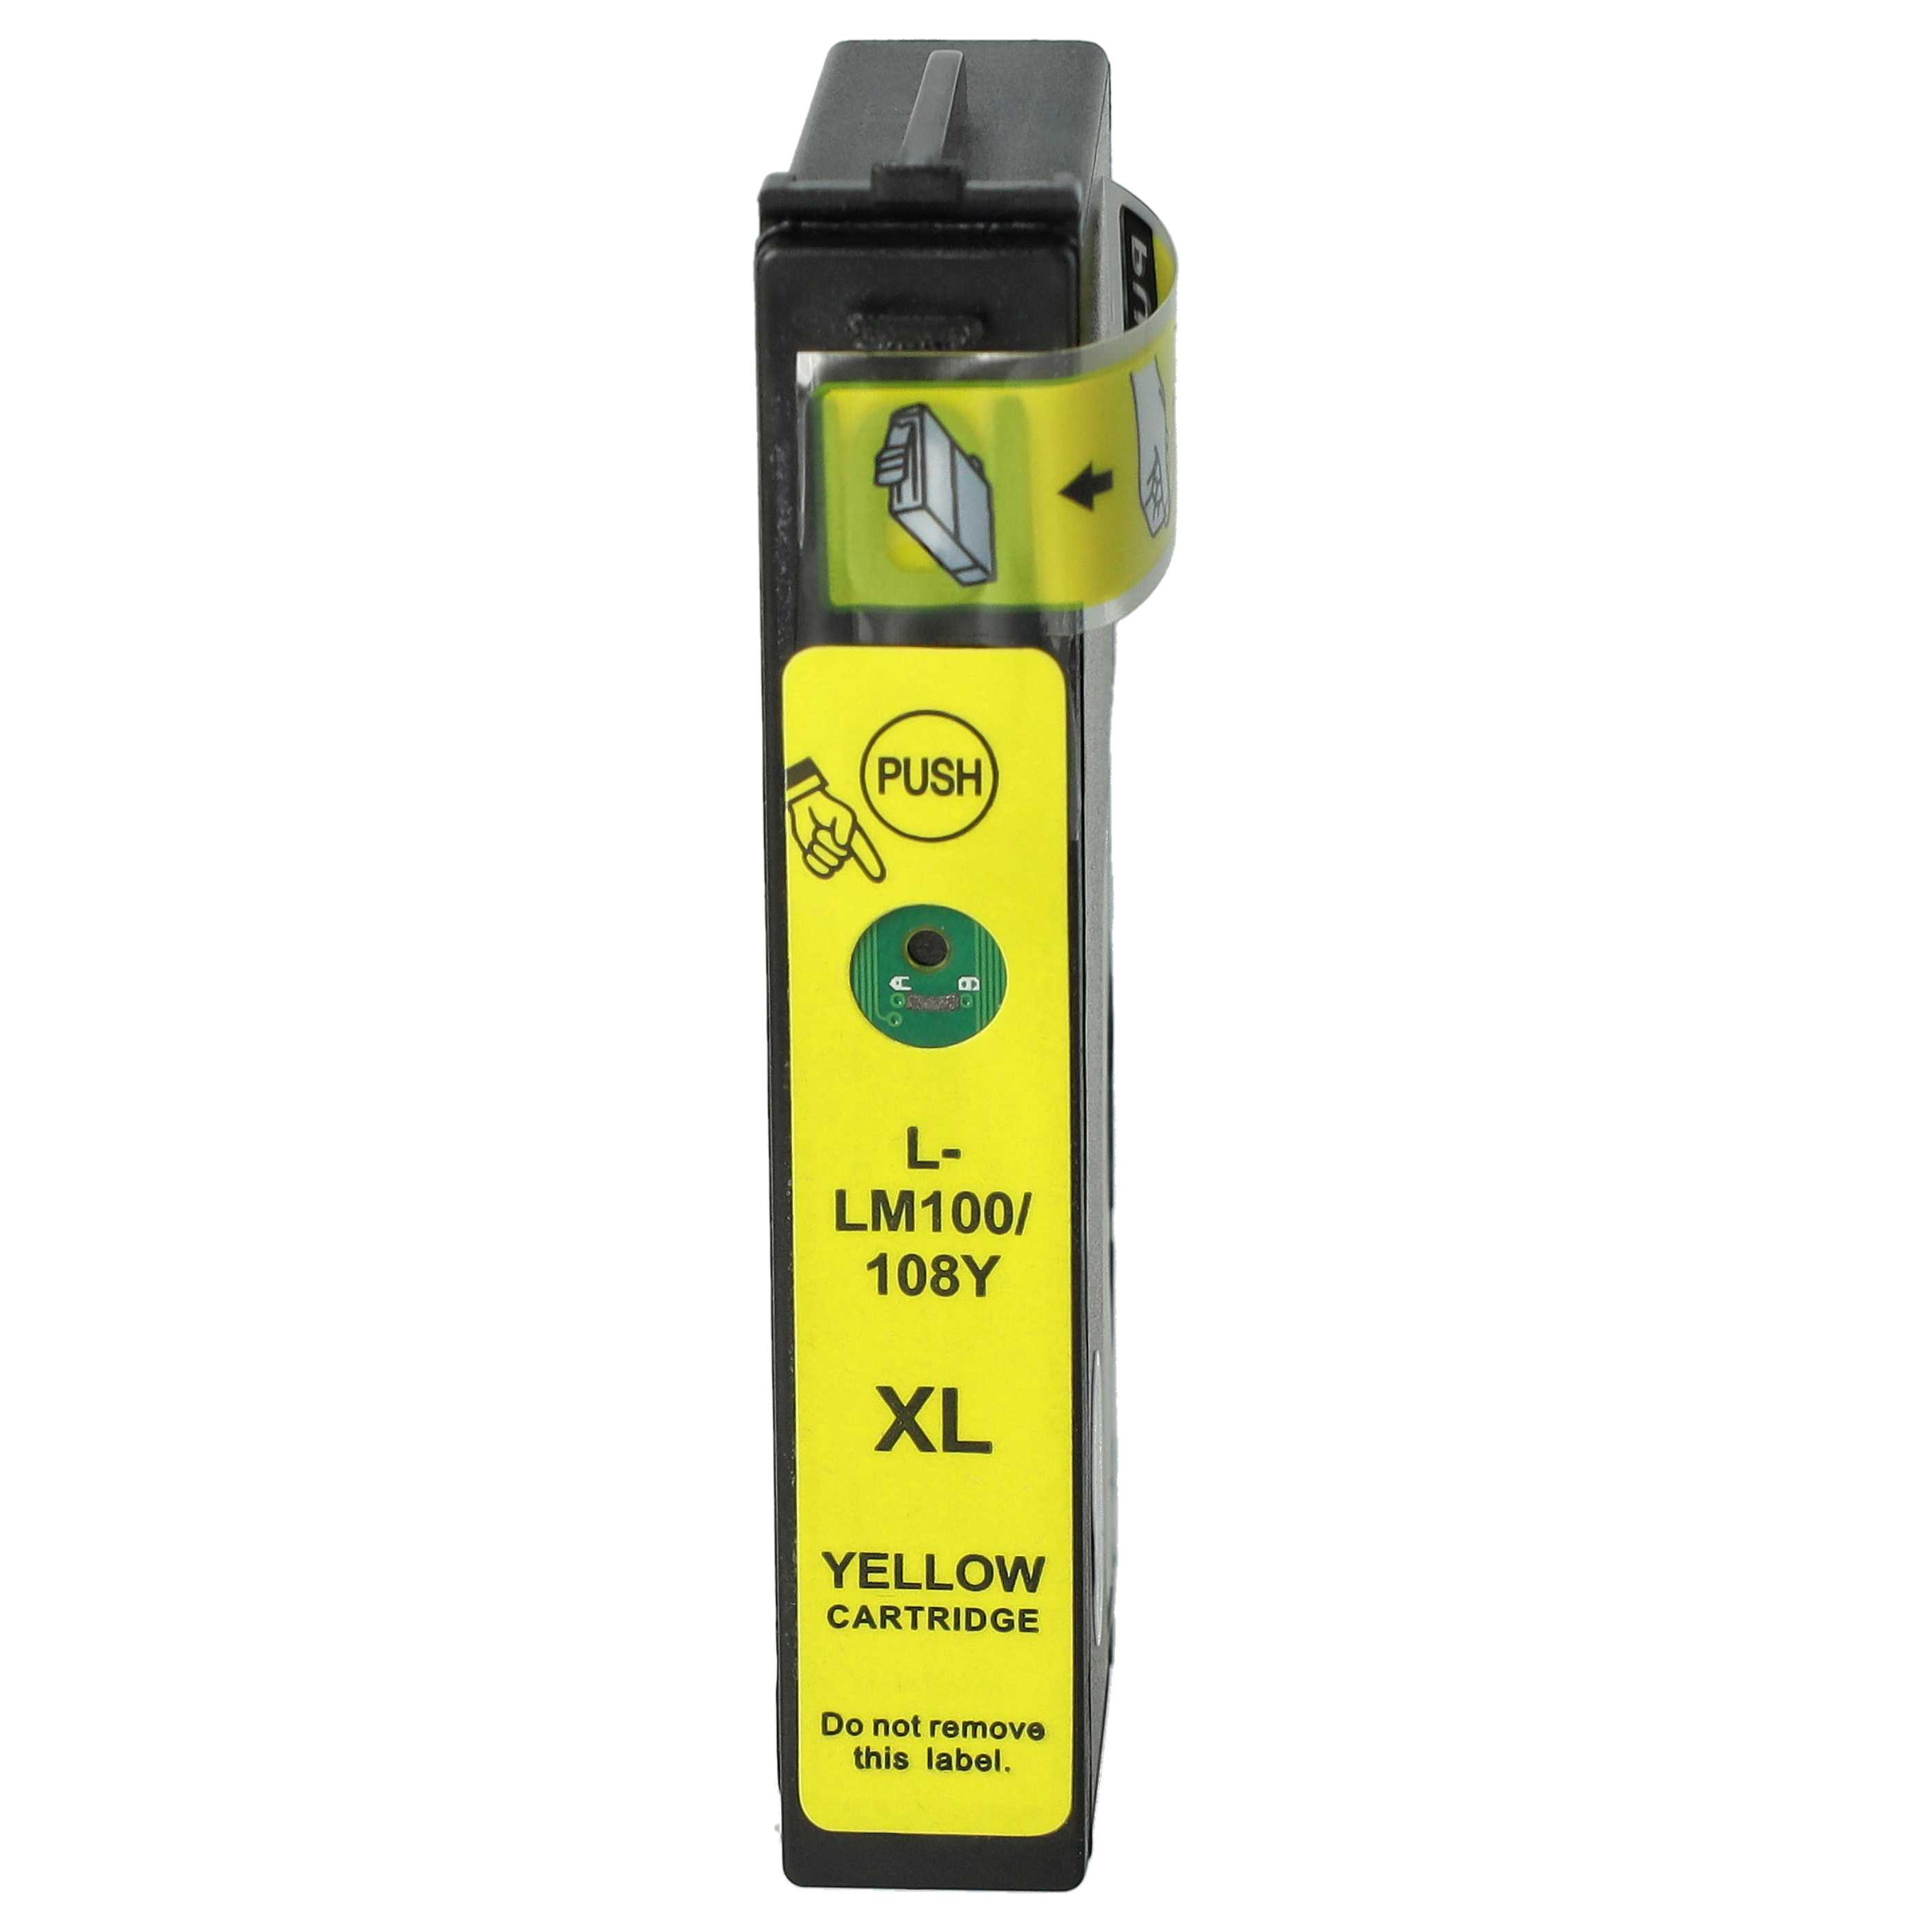 Tintenpatrone als Ersatz für Lexmark 100XL, 100XLA, 100 XL, 100 XLA, 105, 100 für Lexmark Drucker - Gelb